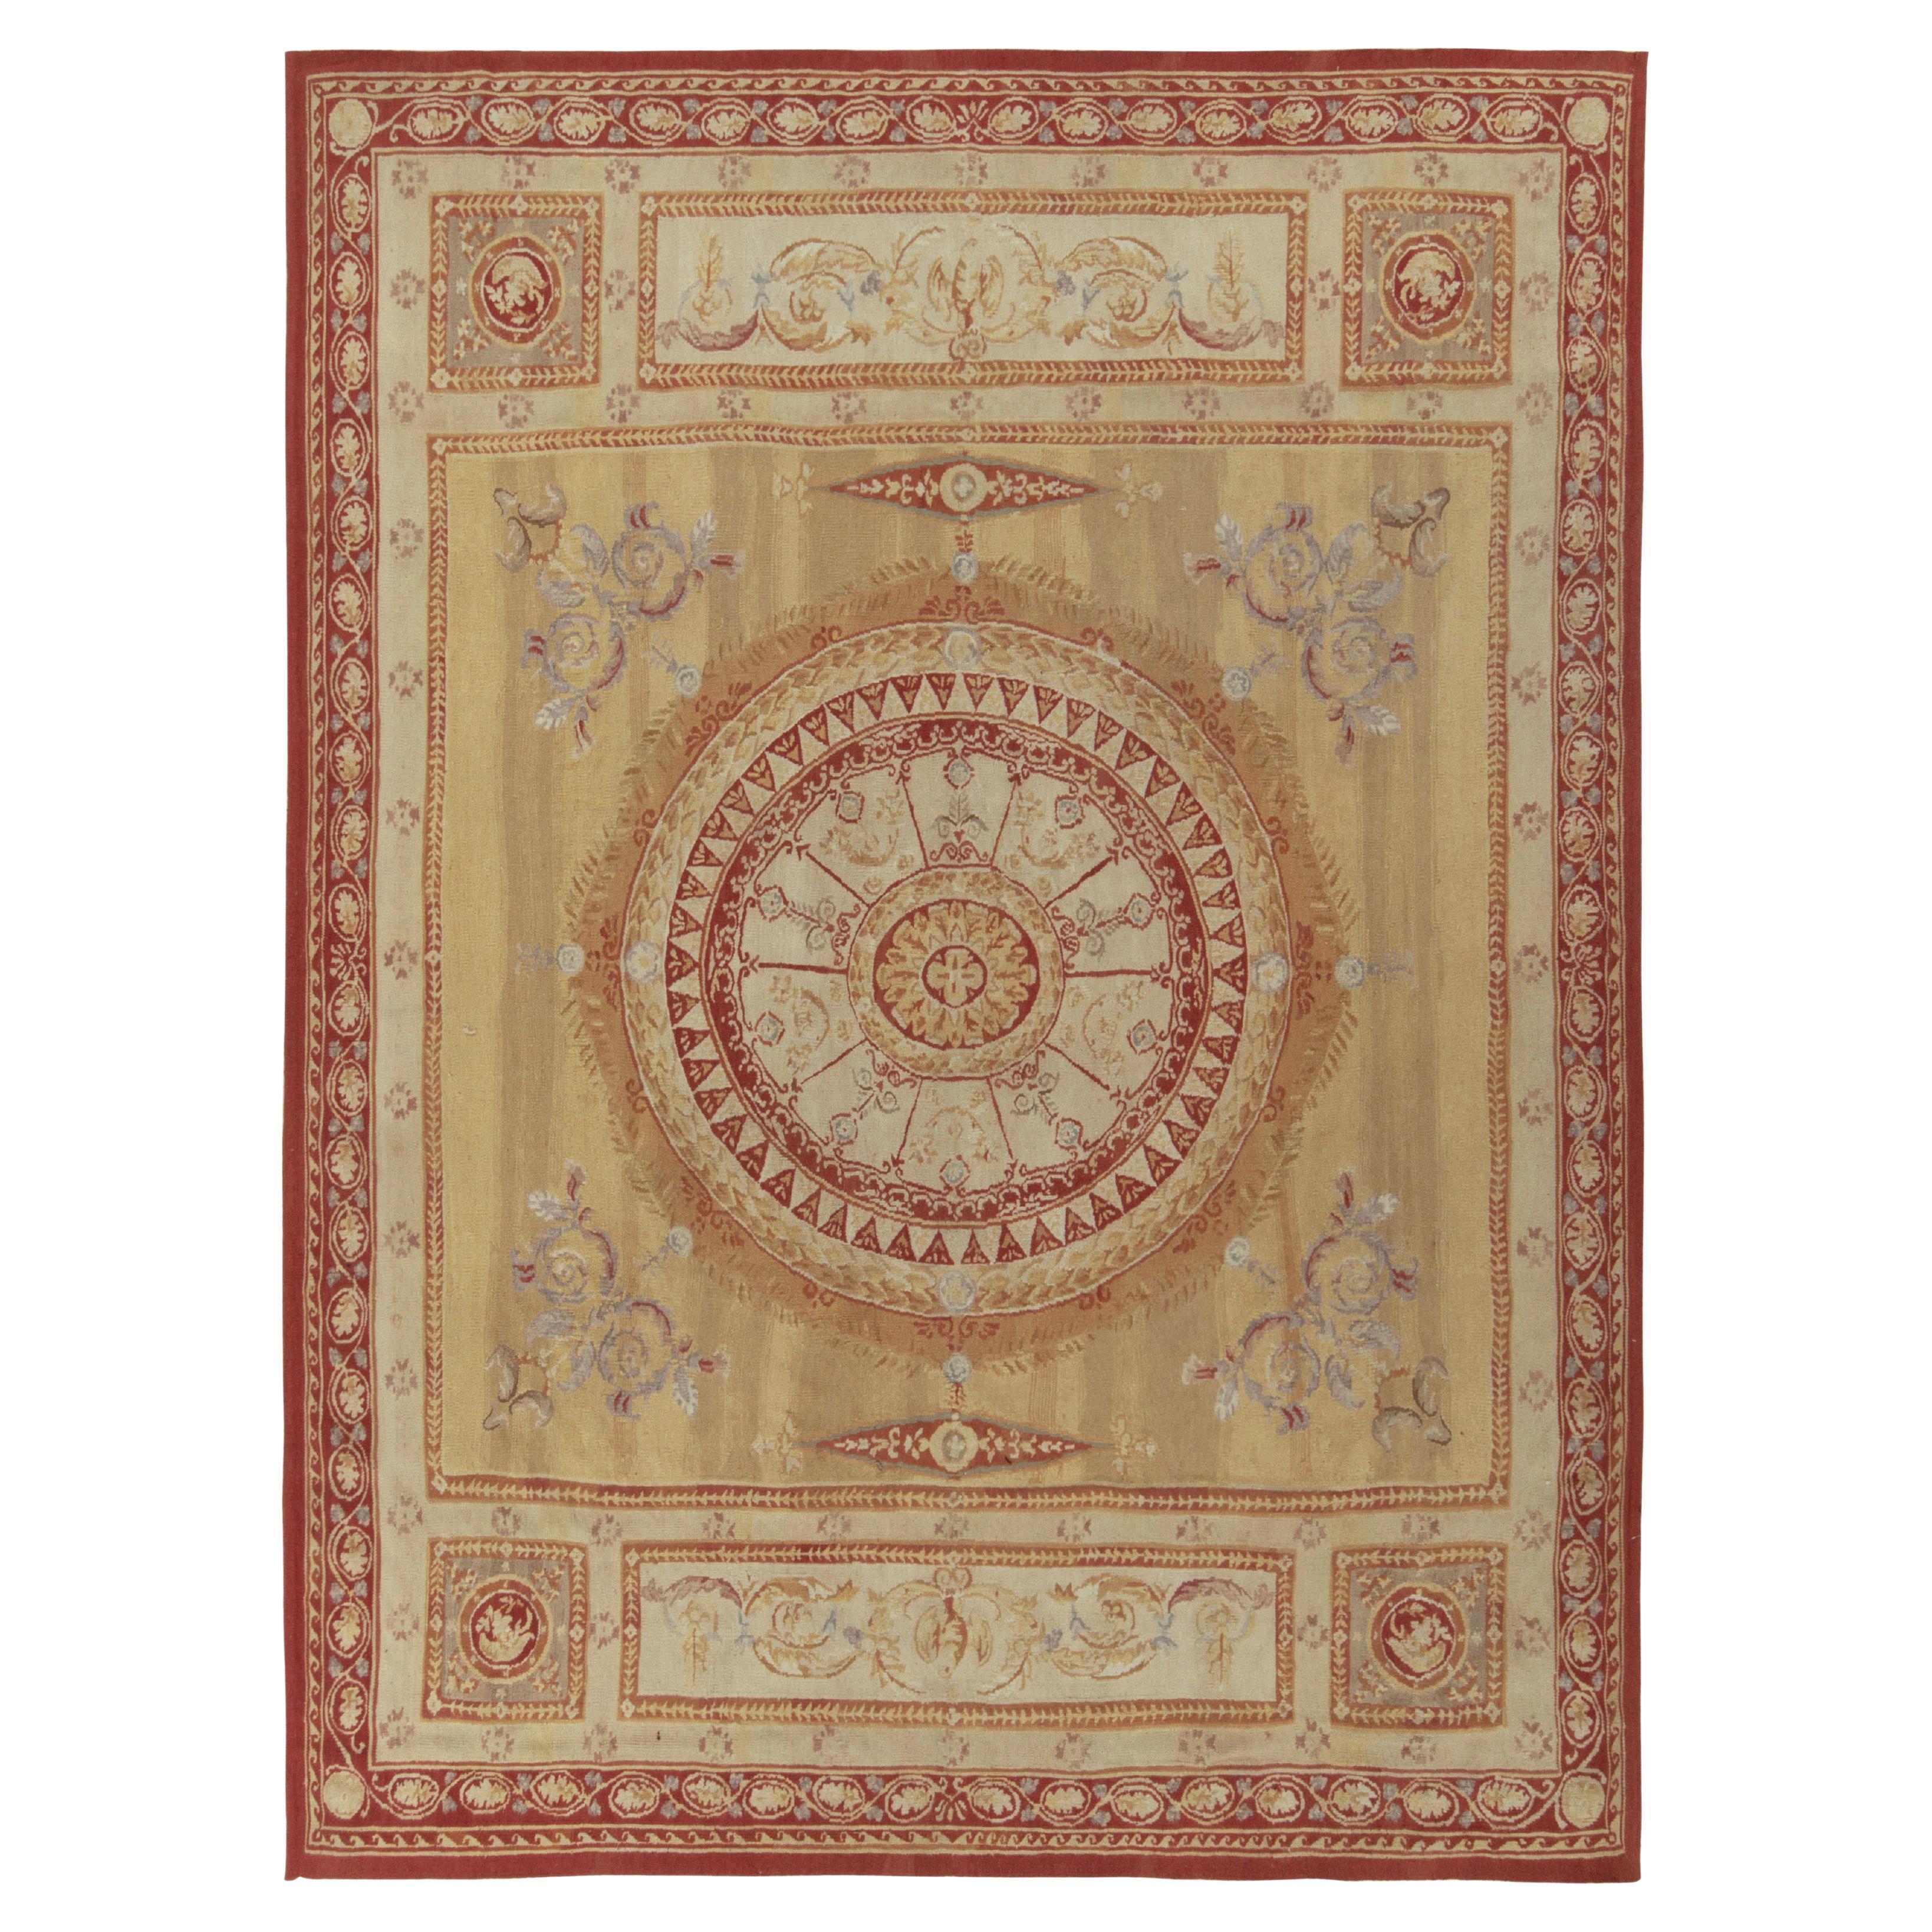 Flachgewebter Teppich im Aubusson-Stil aus Teppich in Beige-Braun, Rot mit Blumenmedaillon